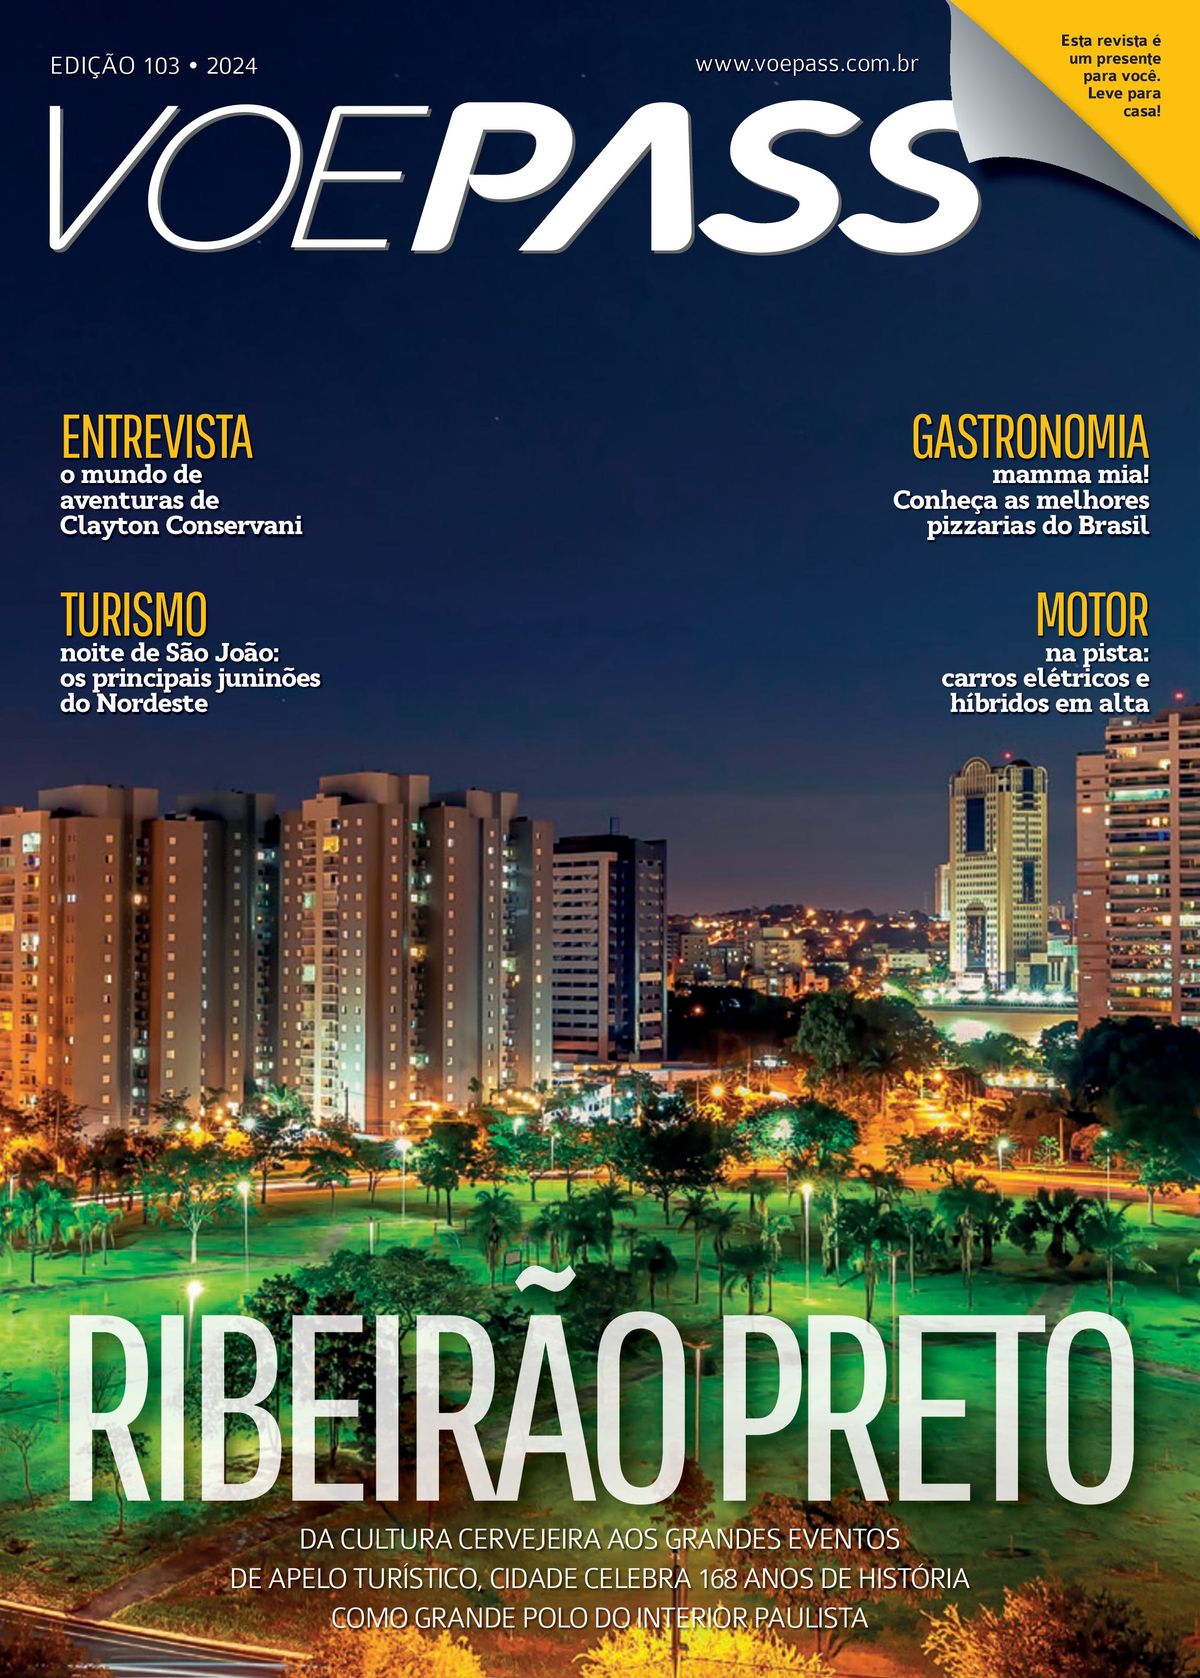 Aventuras de Clayton Conservani, Pizzarias do Brasil e Carros Elétricos em Alta